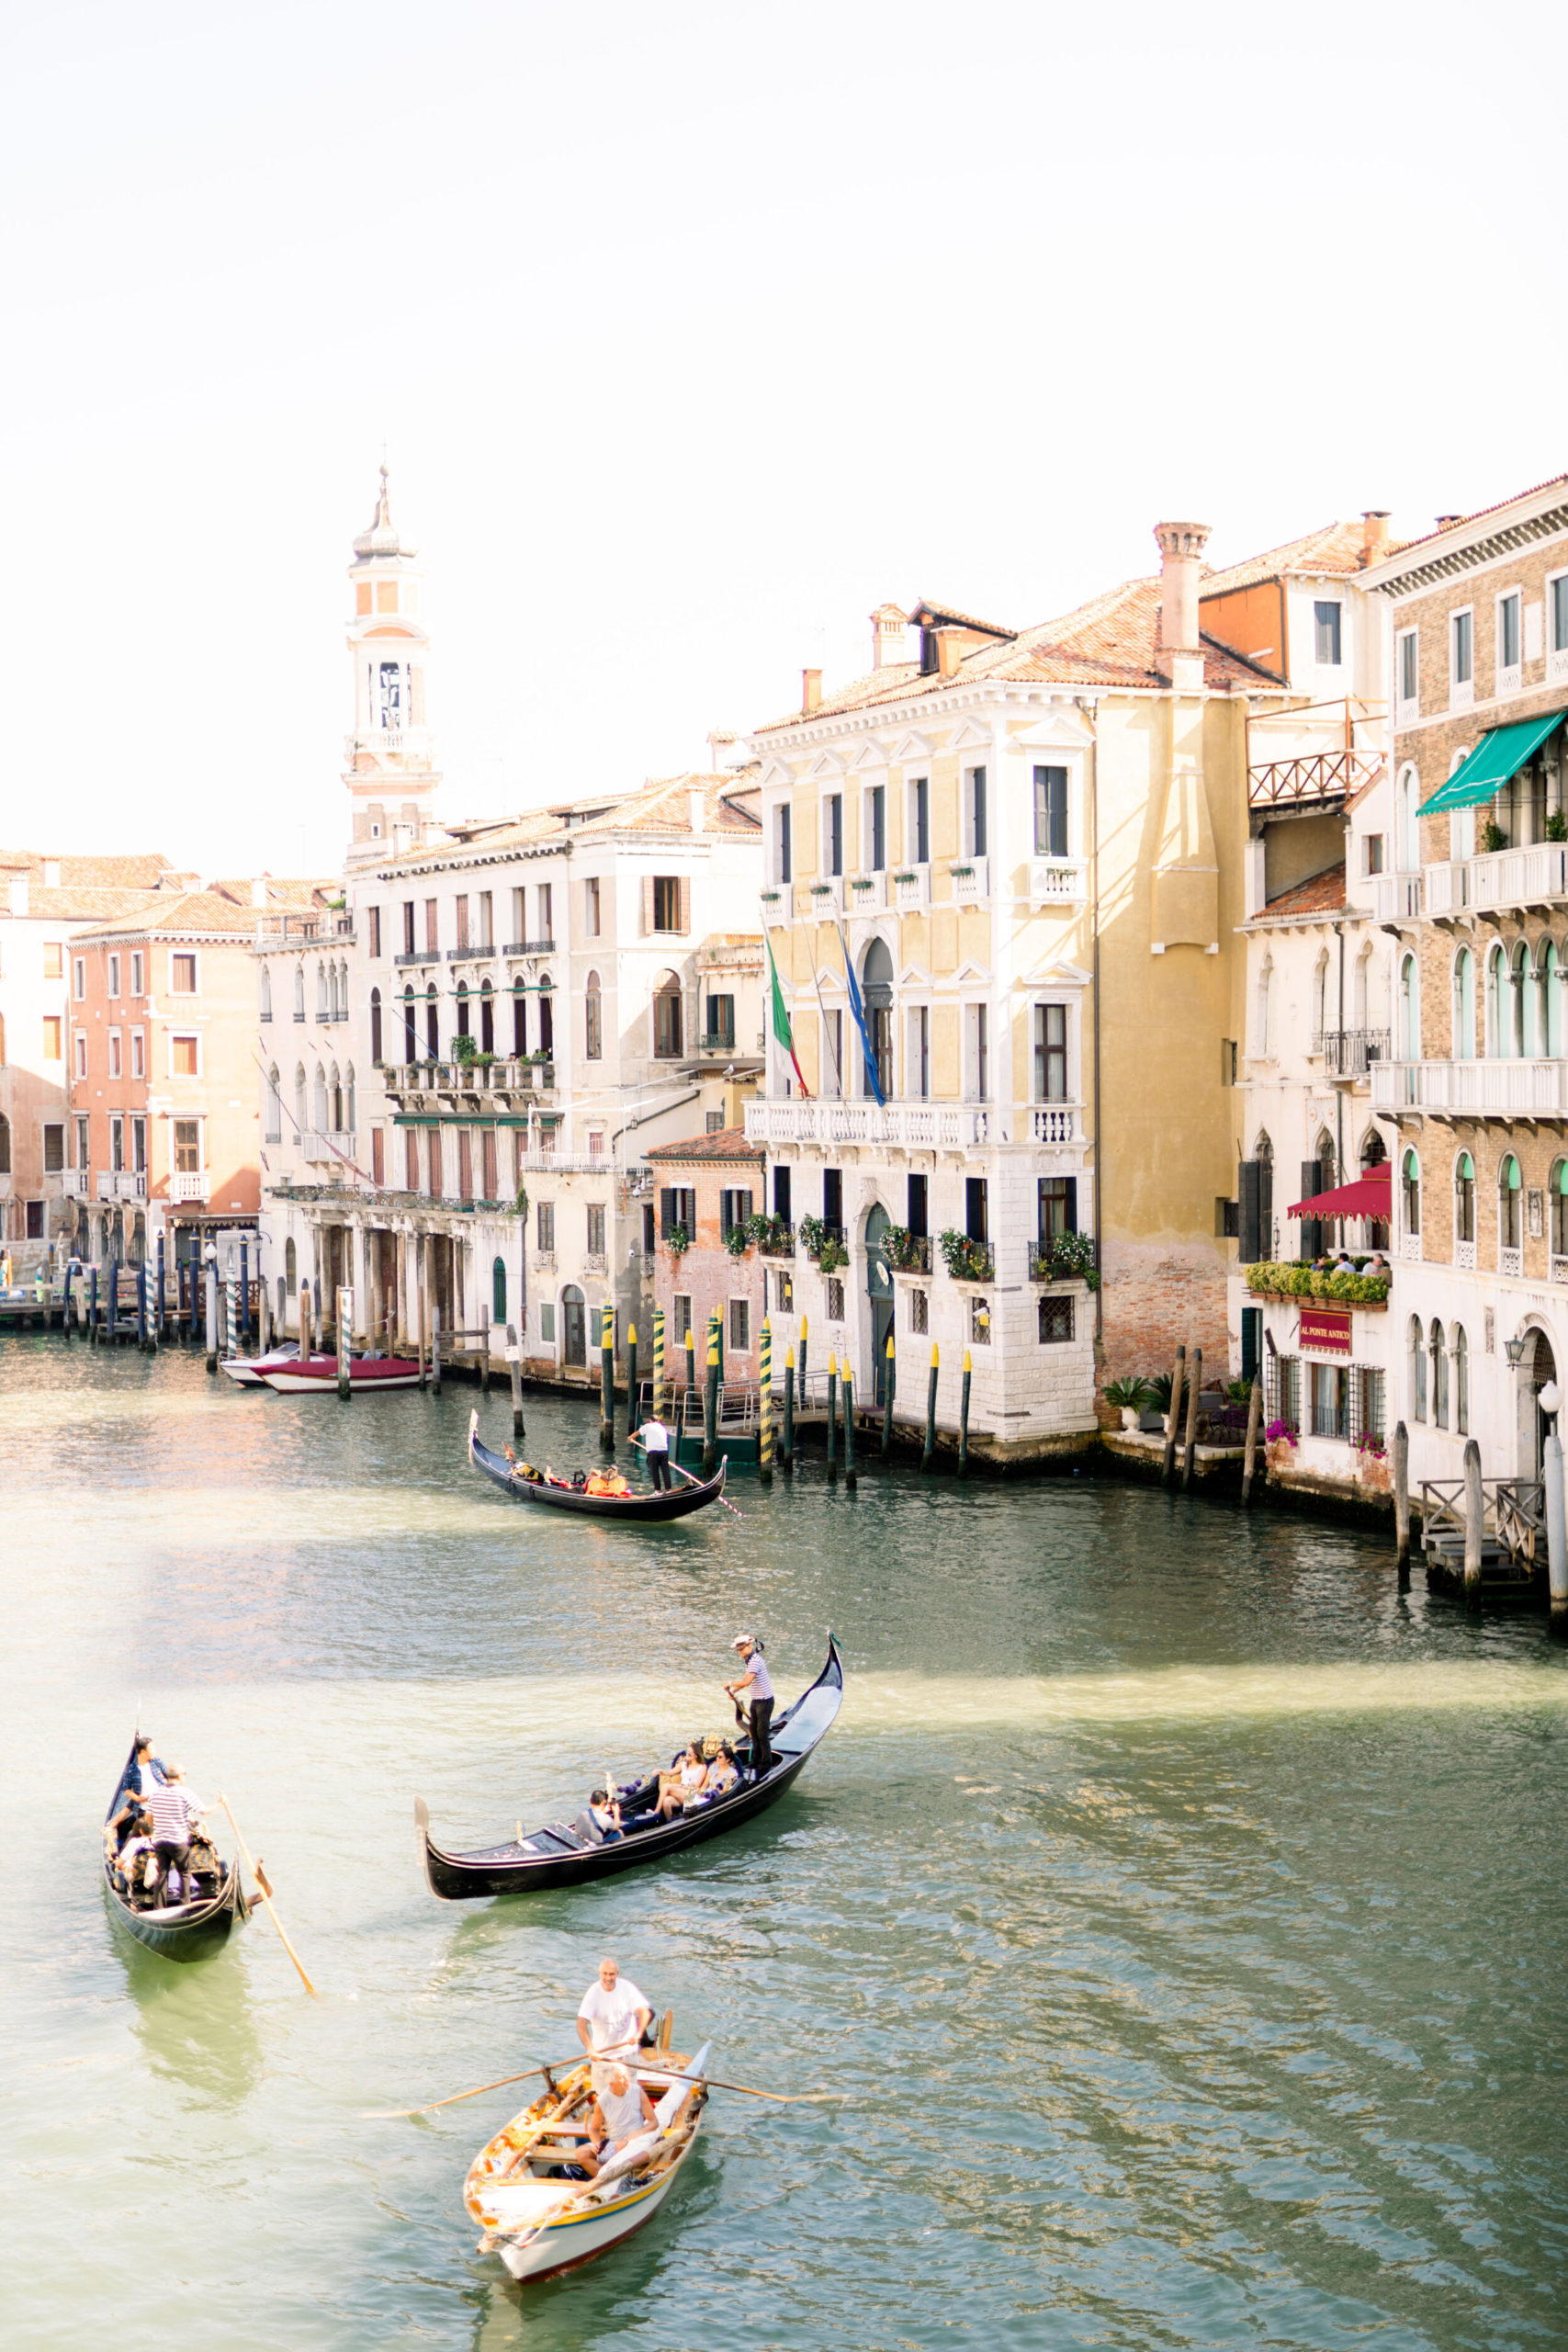 La Scuola Grande dei Carmini Wedding | Destination Elopement | Venice, Italy